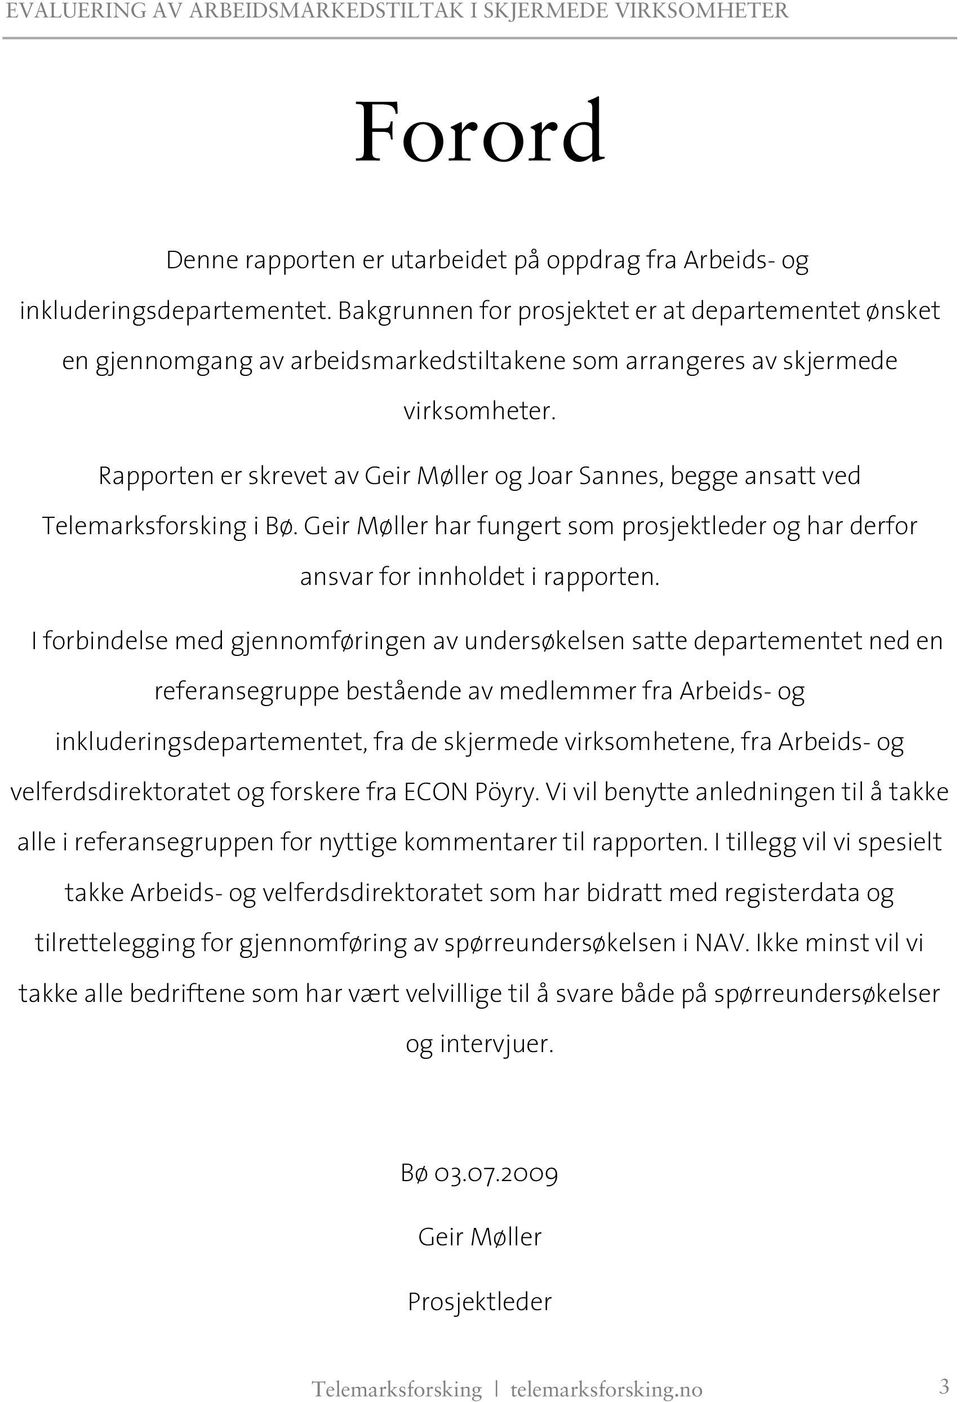 Rapporten er skrevet av Geir Møller og Joar Sannes, begge ansatt ved Telemarksforsking i Bø. Geir Møller har fungert som prosjektleder og har derfor ansvar for innholdet i rapporten.